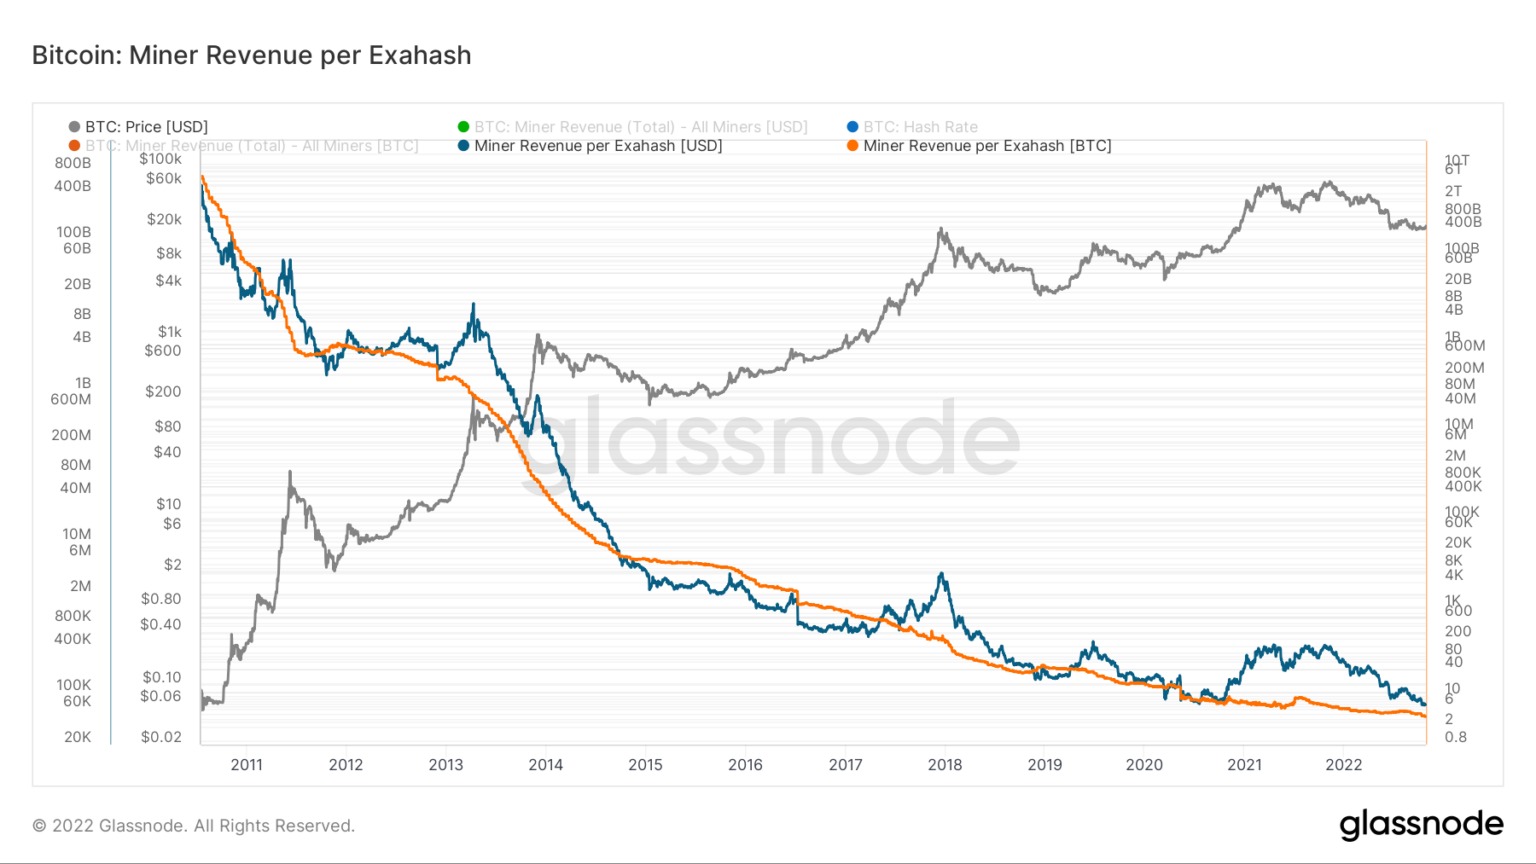 Grafik der Bitcoin-Miner-Einnahmen pro Exahash von 2011 bis 2022 (Quelle: Glassnode)